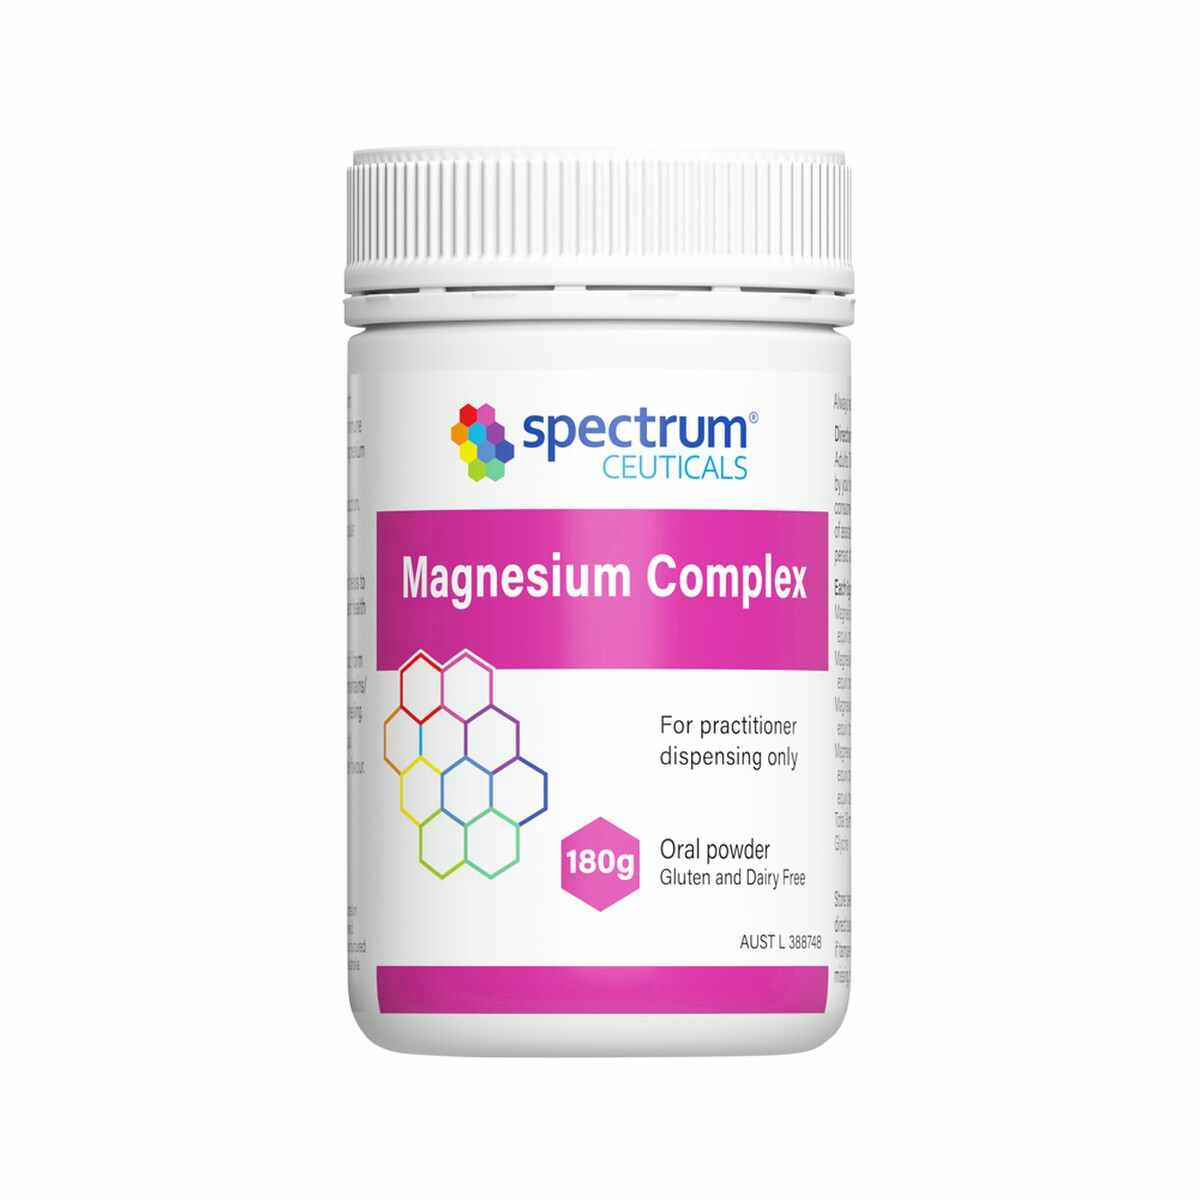 image of Spectrumceuticals Magnesium Complex Oral Powder 180g on whitebackground